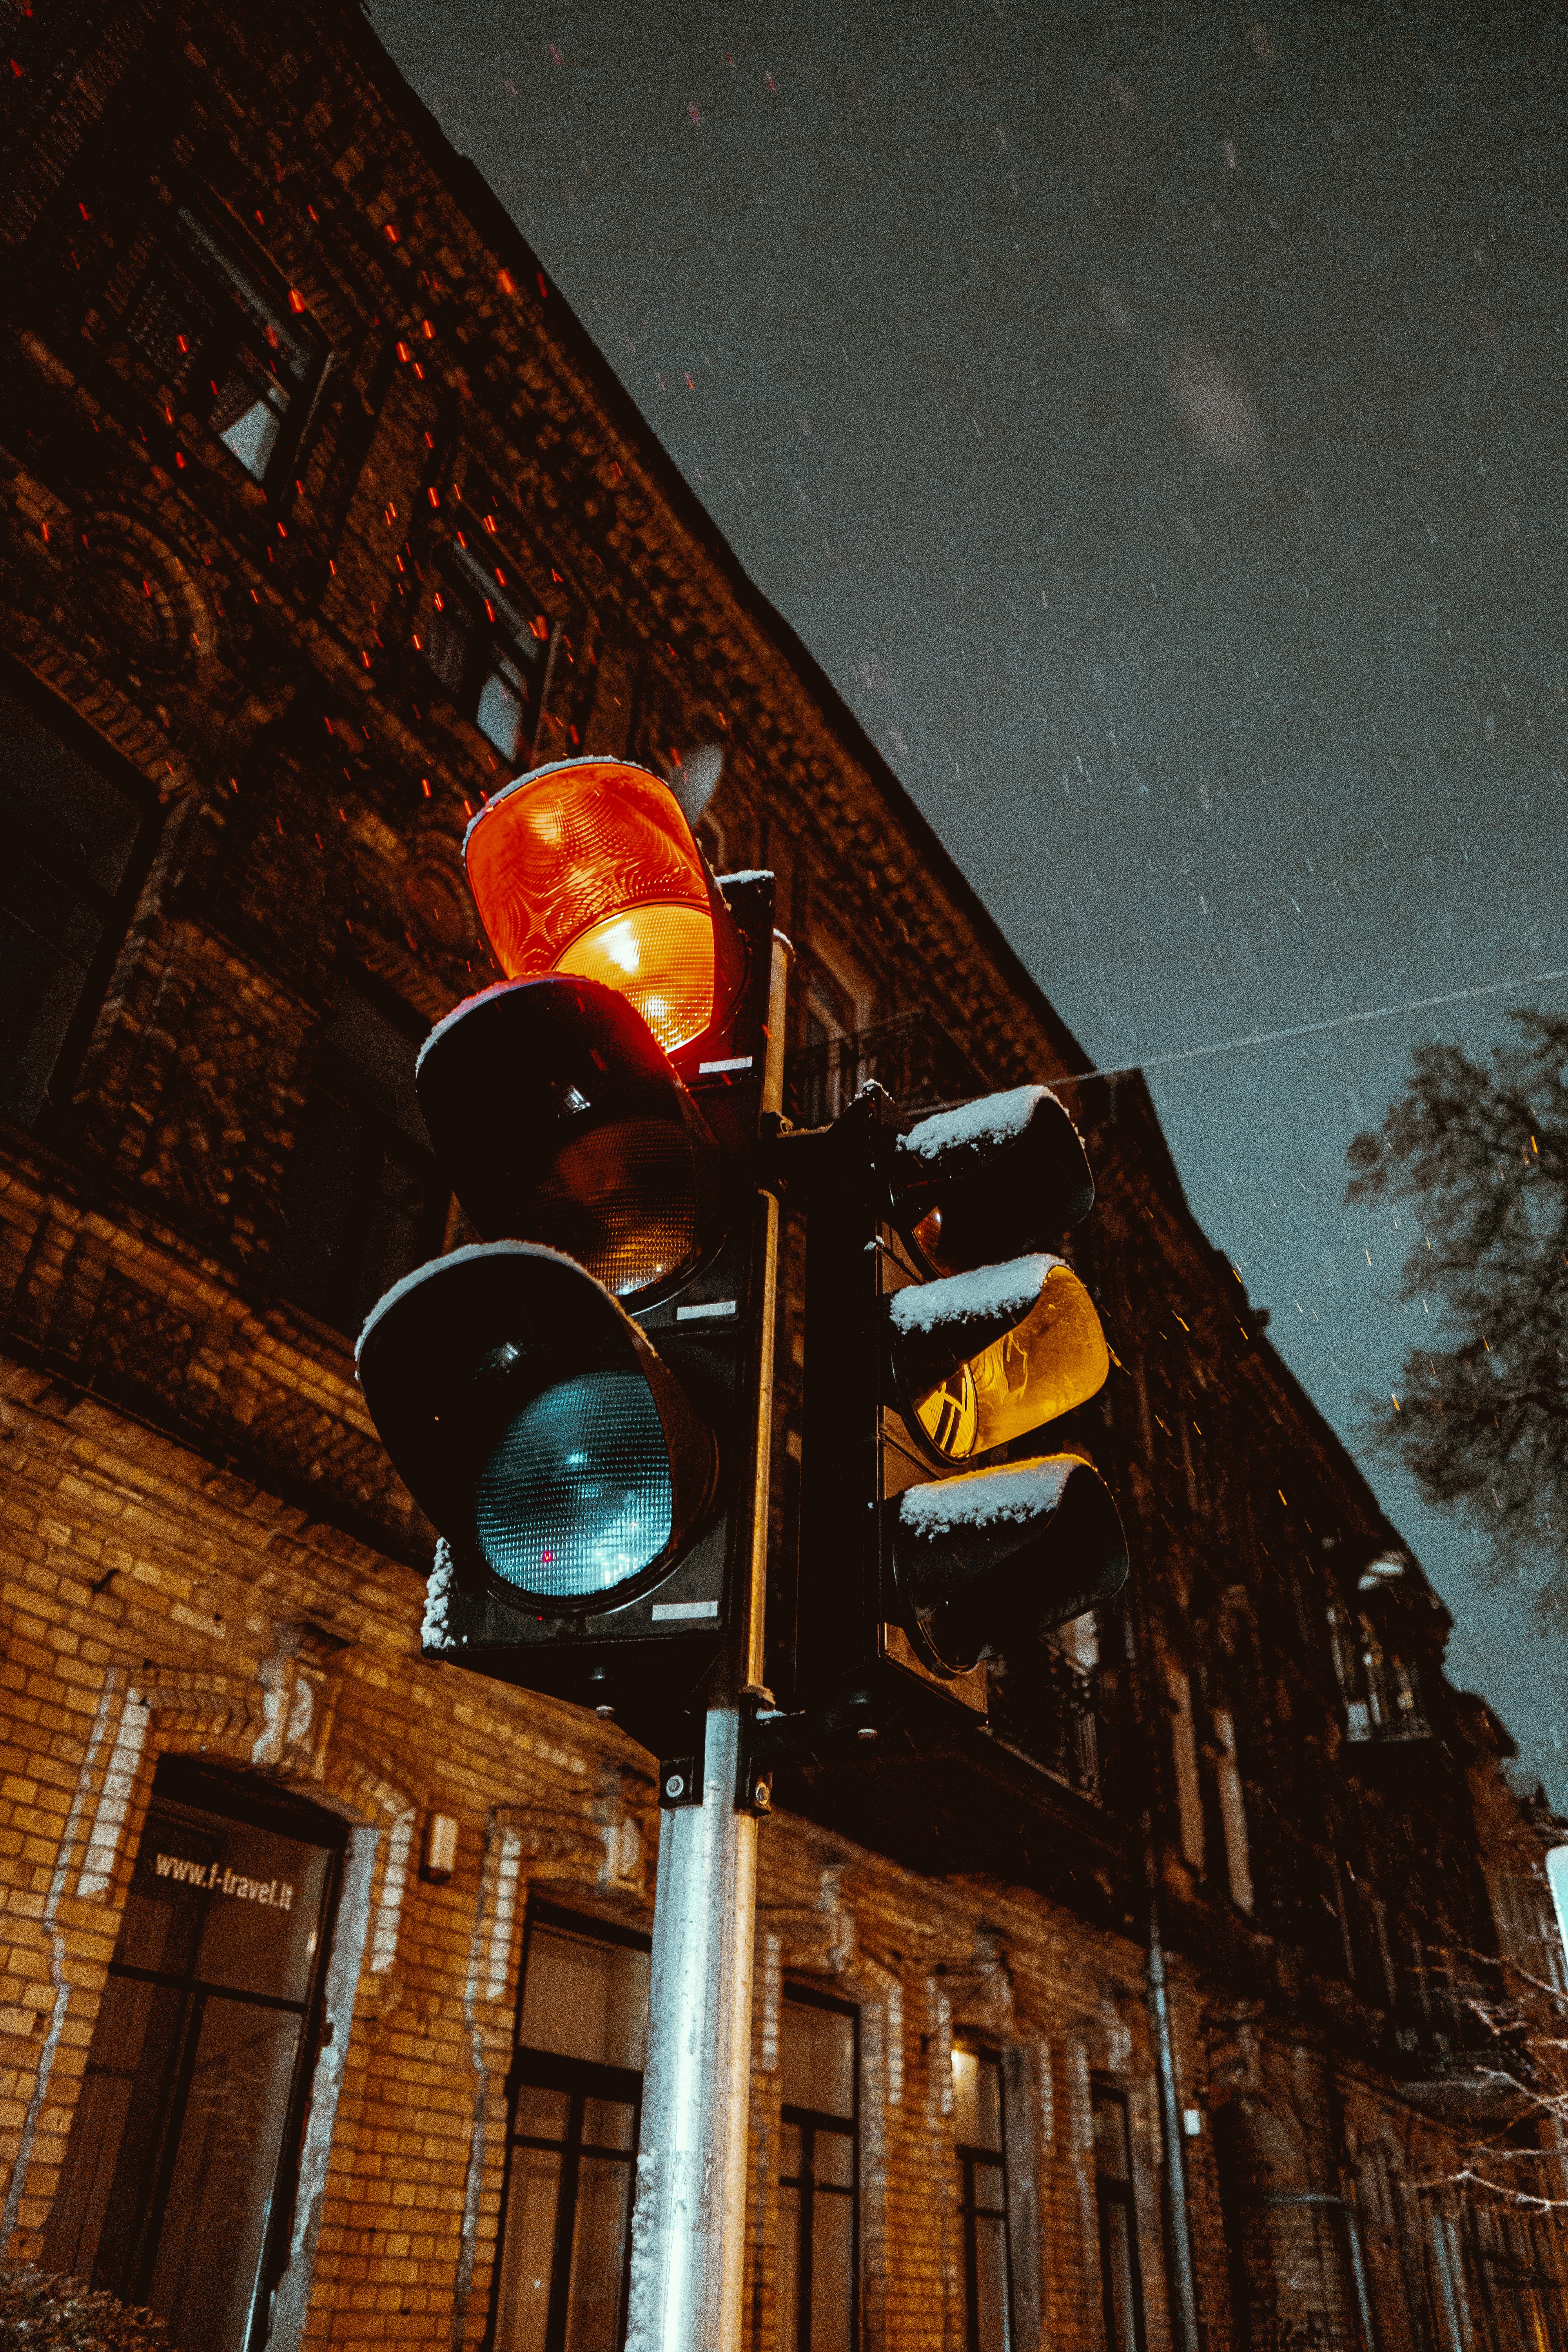 Popular Traffic Light Image for Phone